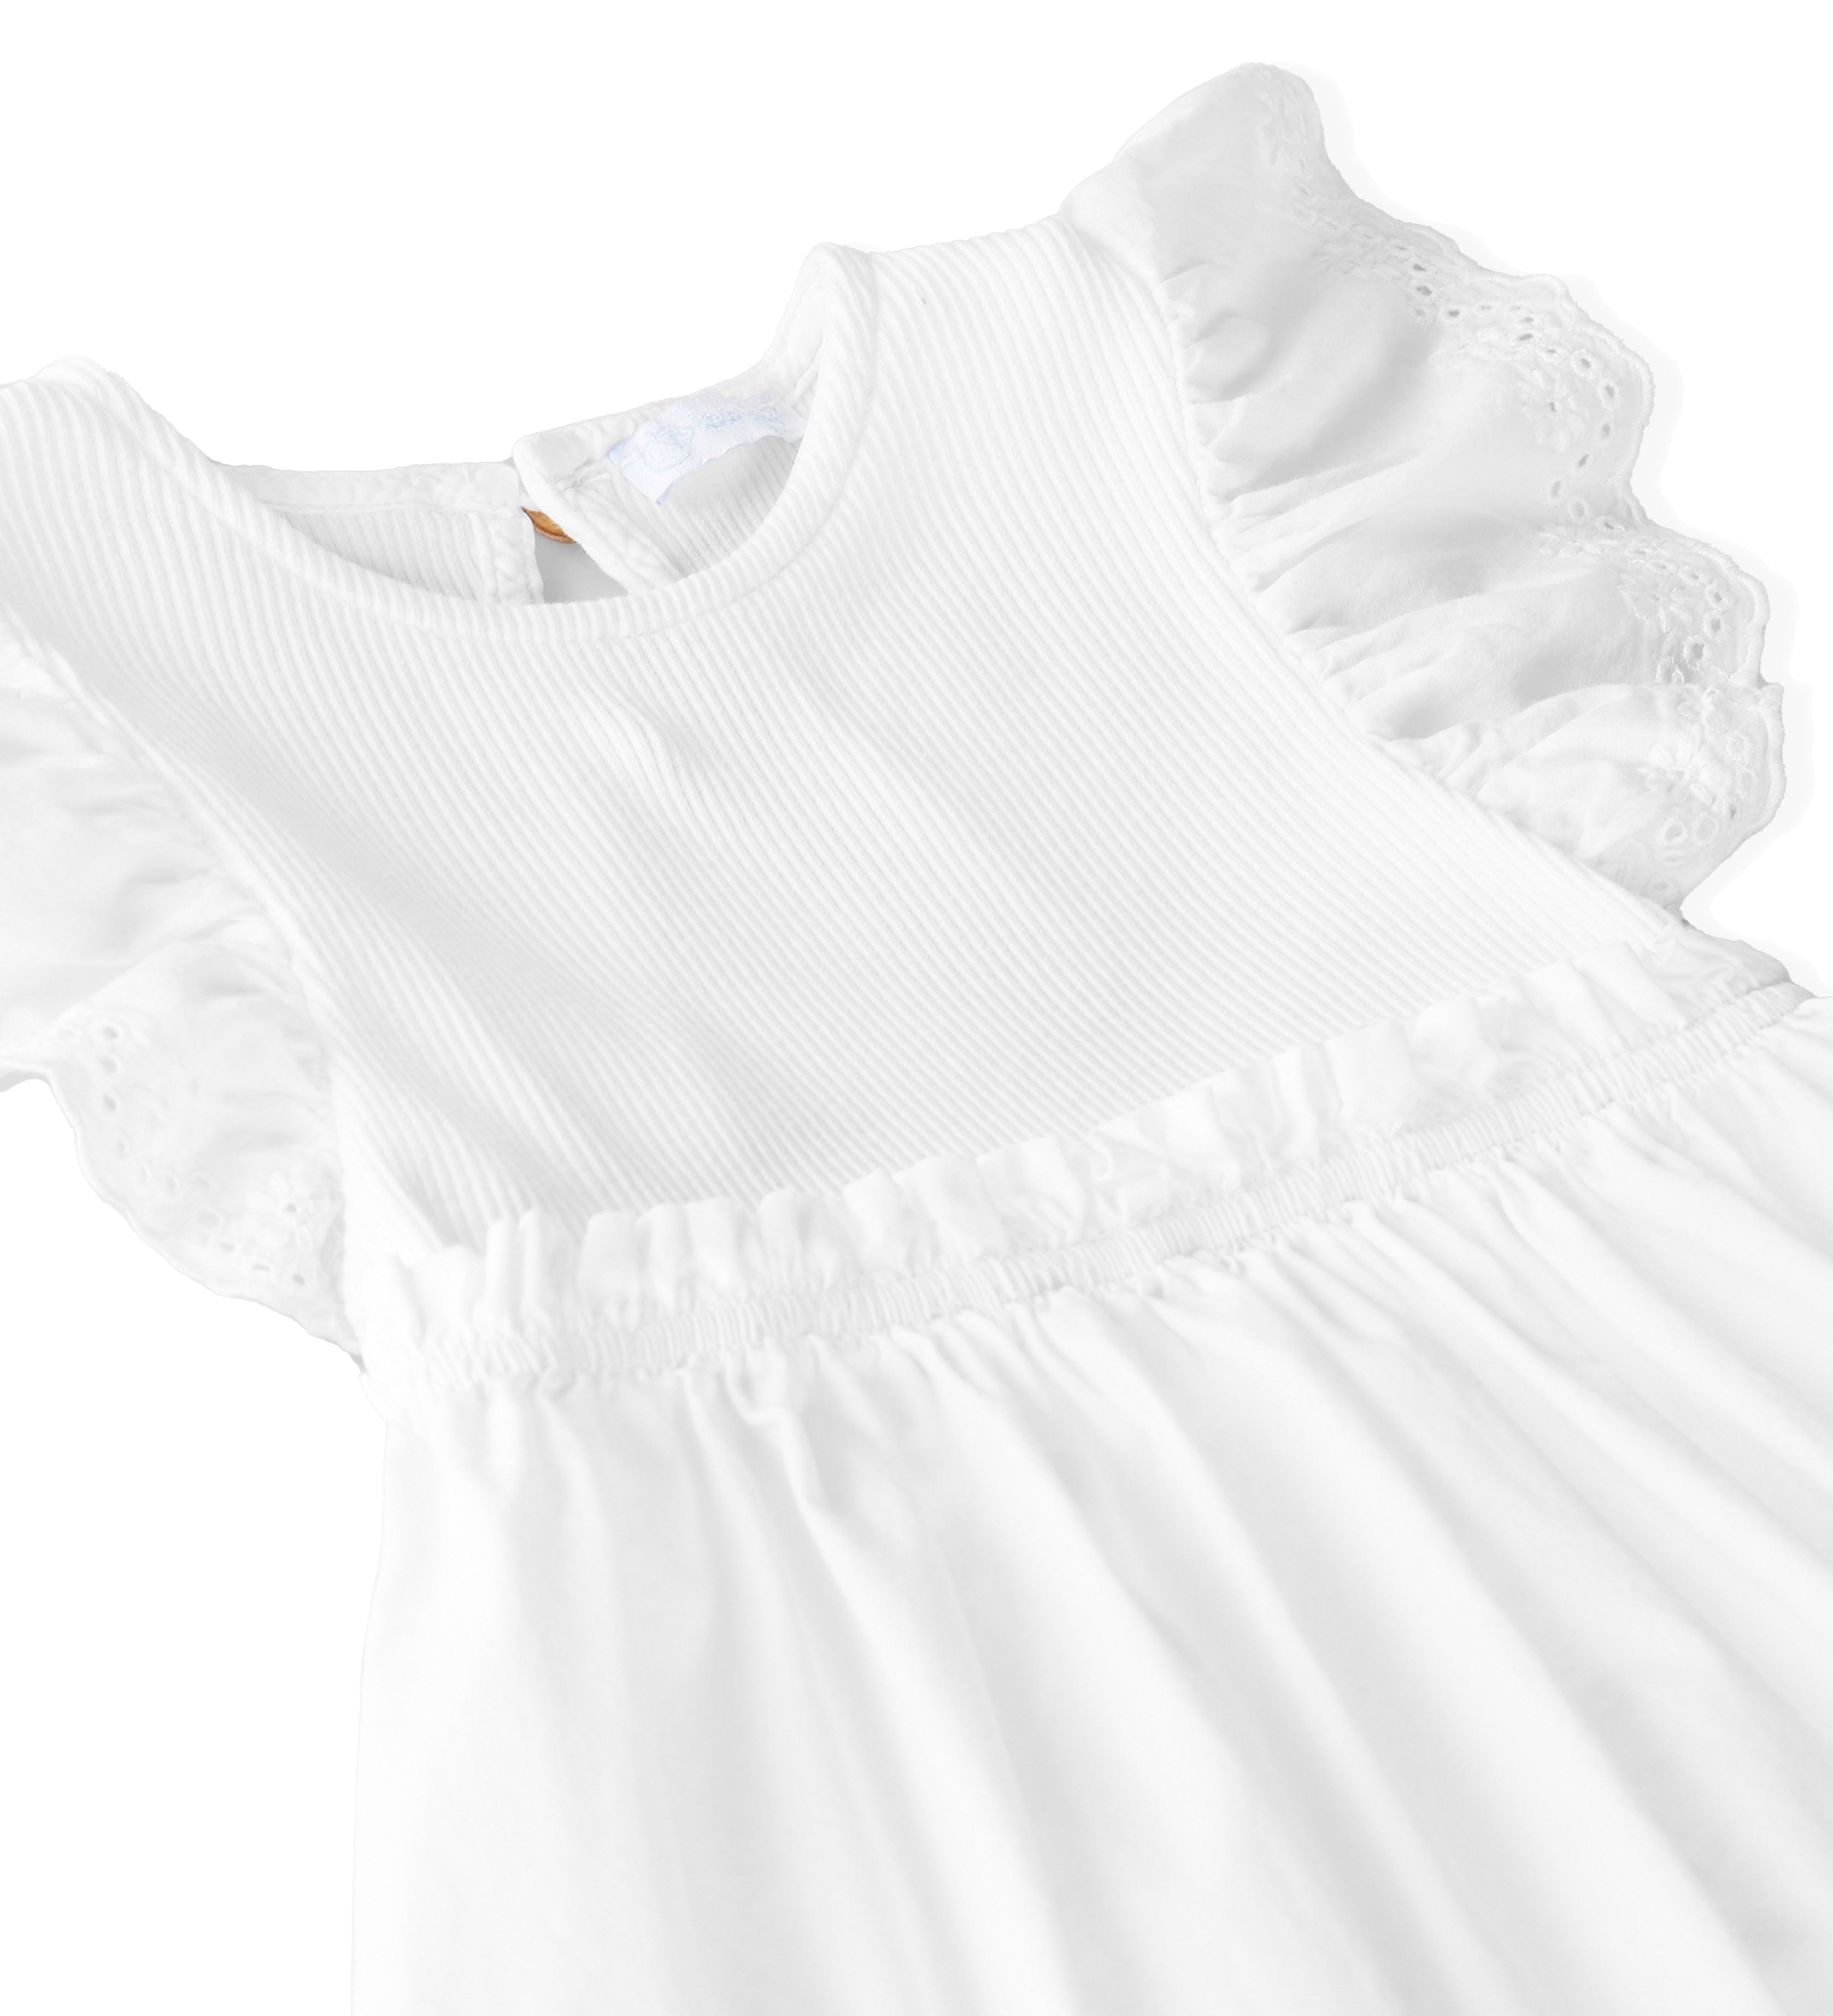 Laranjinha dress white with ruffle